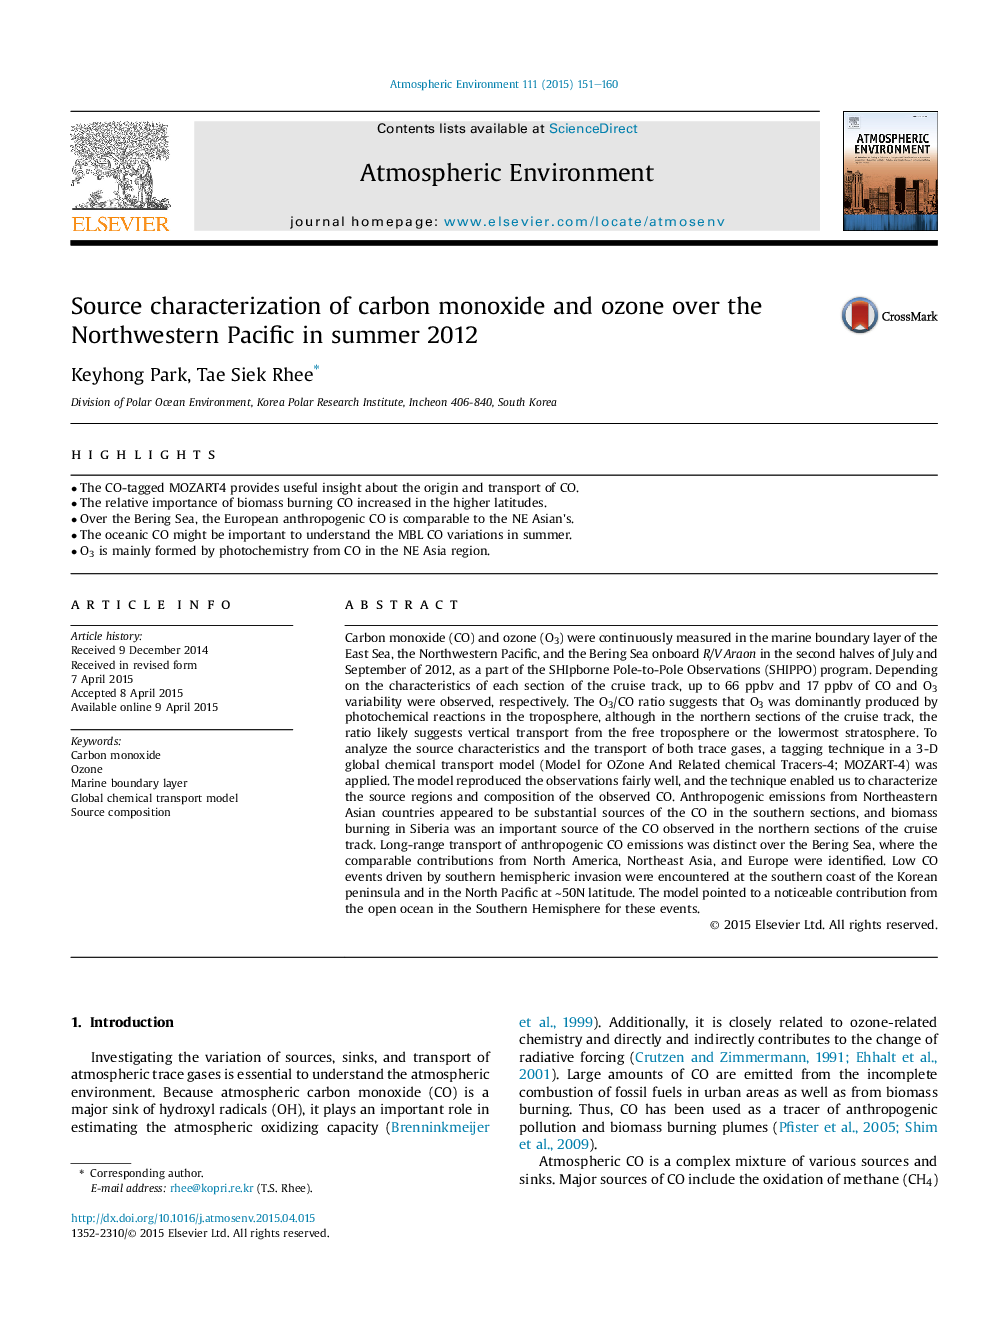 تعریف منبع مونوکسید کربن و اوزون در شمال غرب اقیانوس آرام در تابستان 2012 